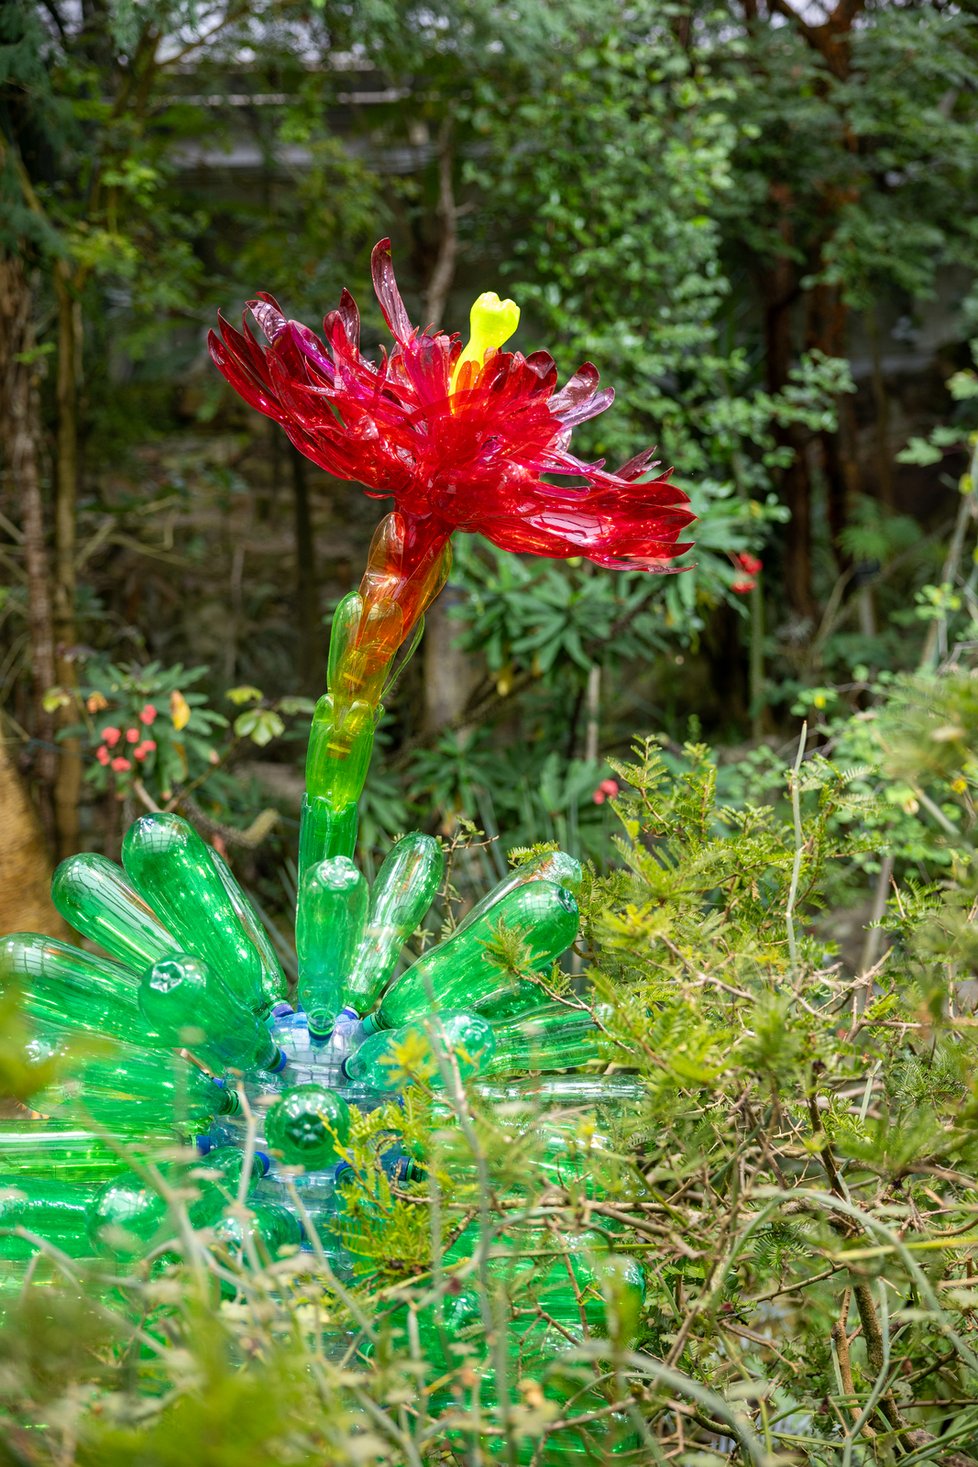 První výstavou pražské botanické zahrady v Troji je Nová PET Tropicana, kterou vytvořila sochařka Veronika Richterová. Její výtvory z plastových lahví doplnily stálou expozici ve skleníku Fata Morgana. (18. leden 2024)